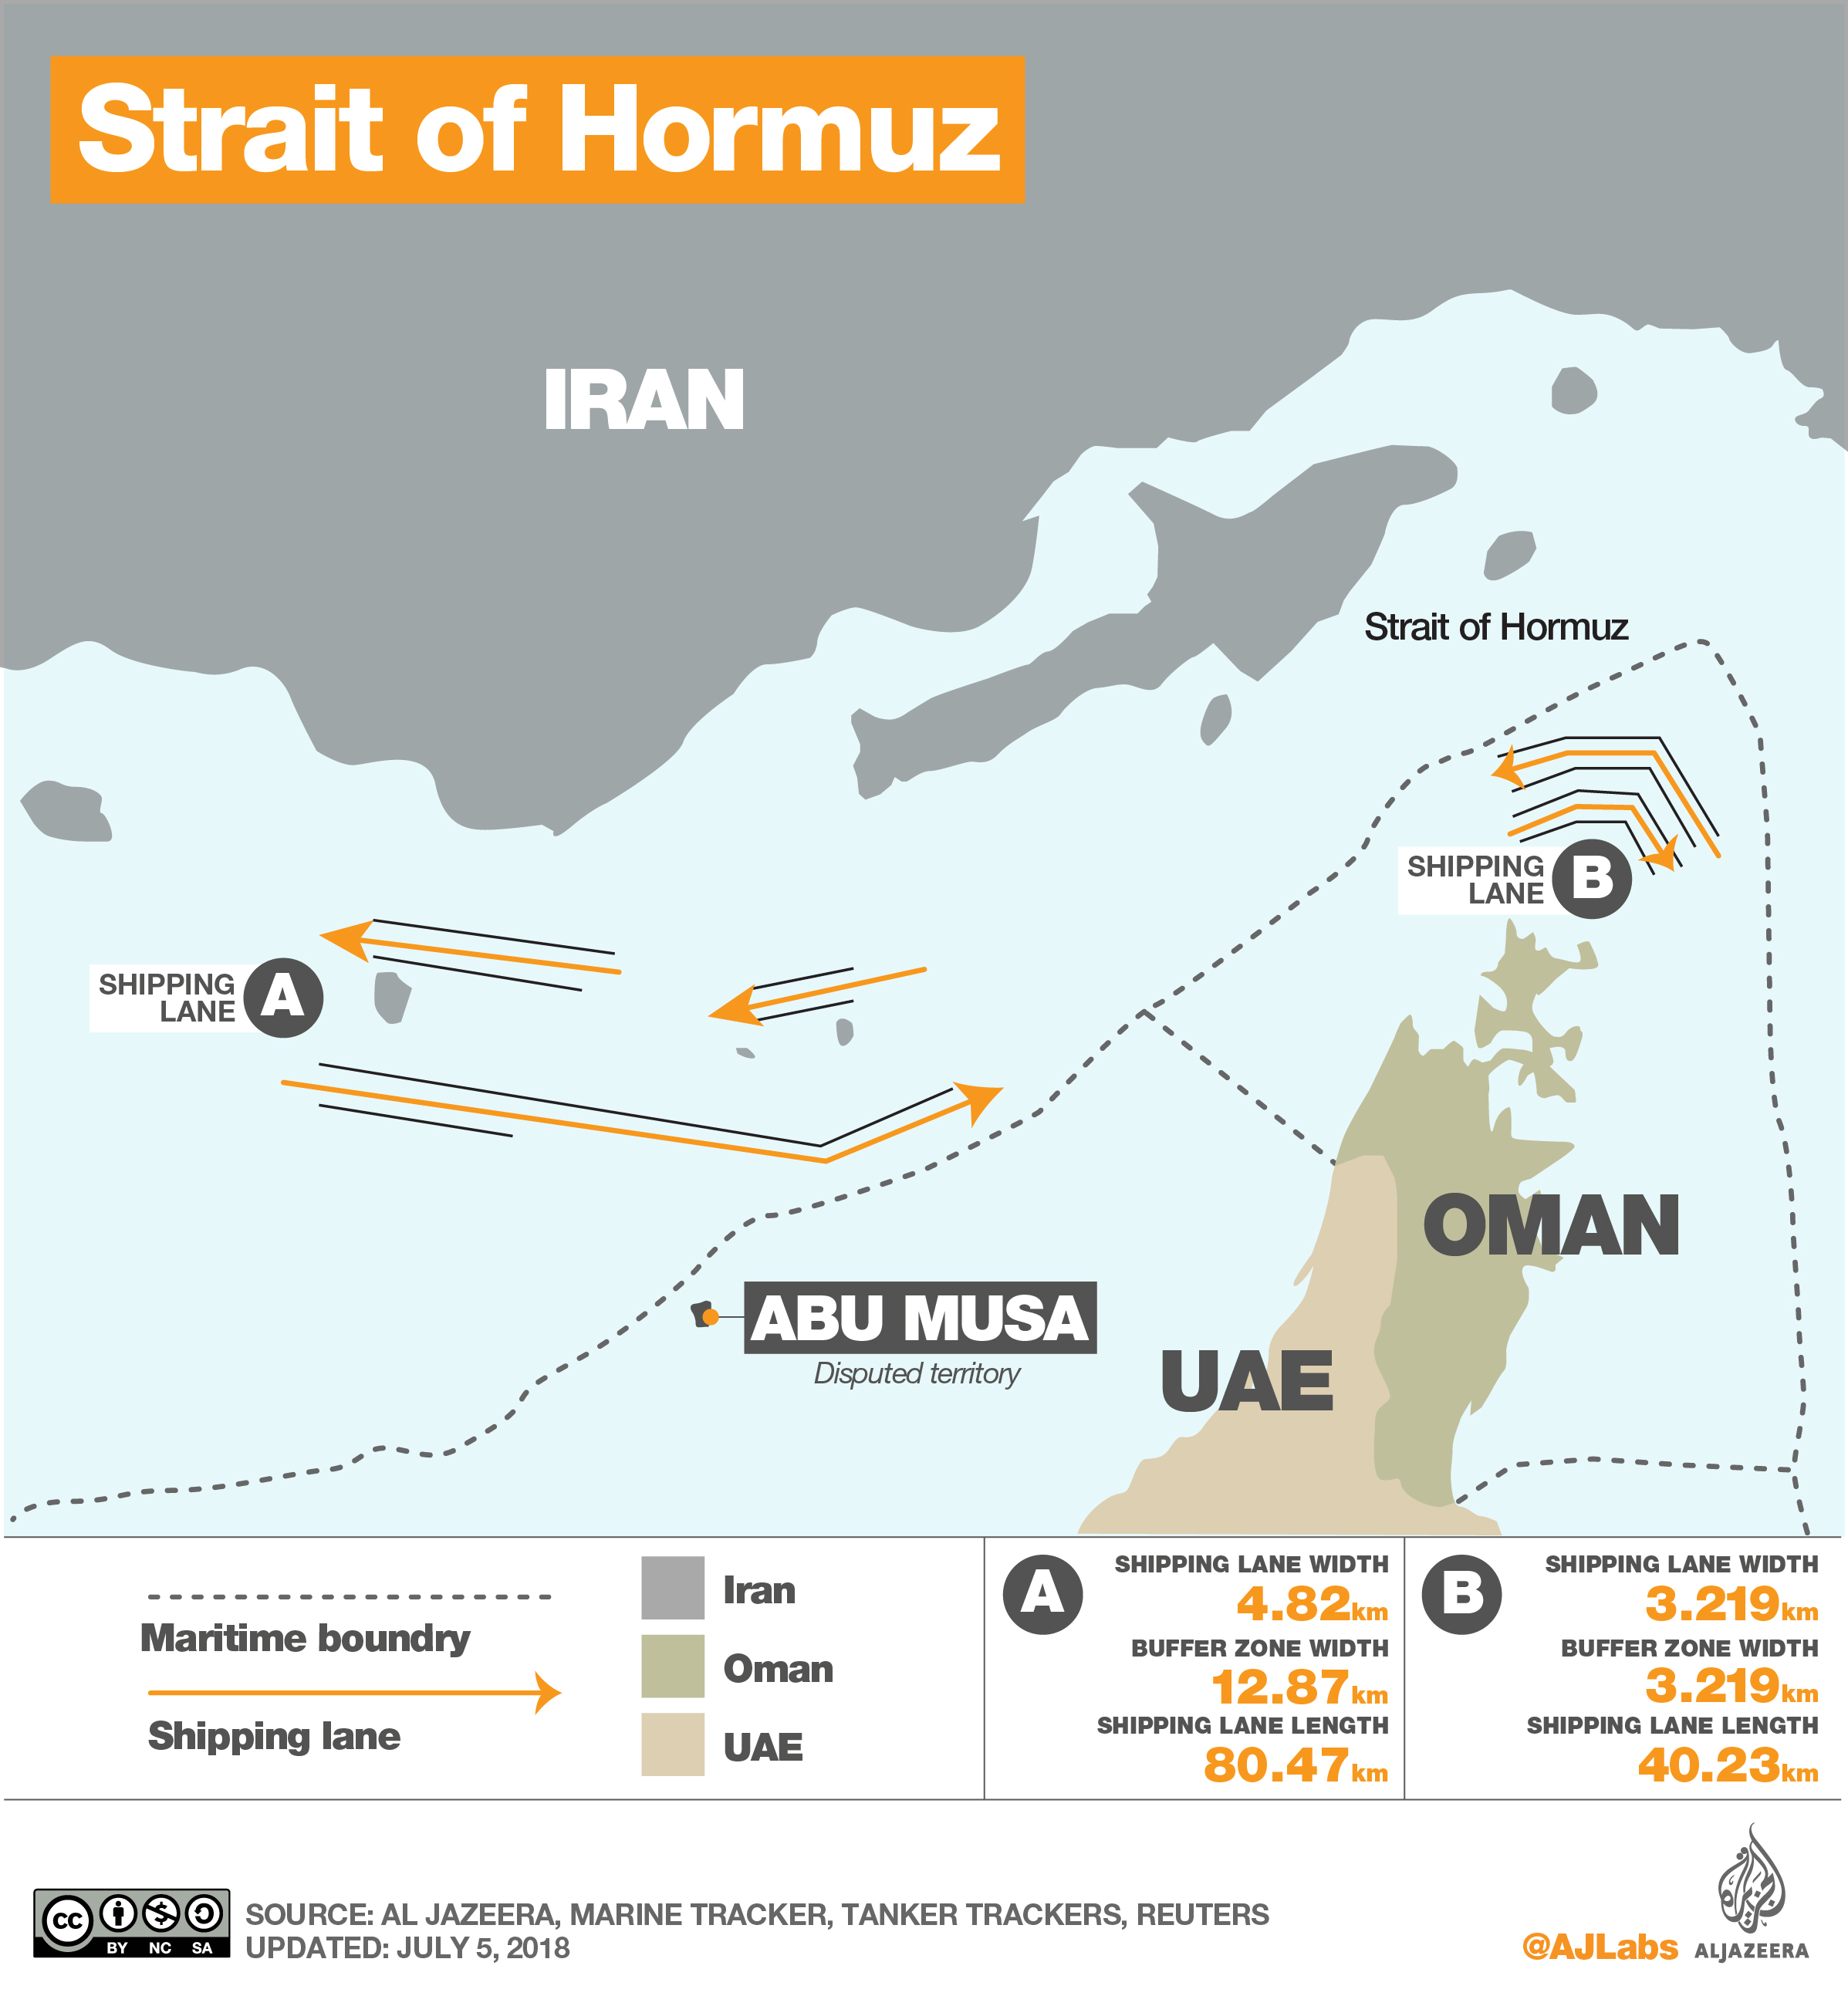 strait of hormuz infographic